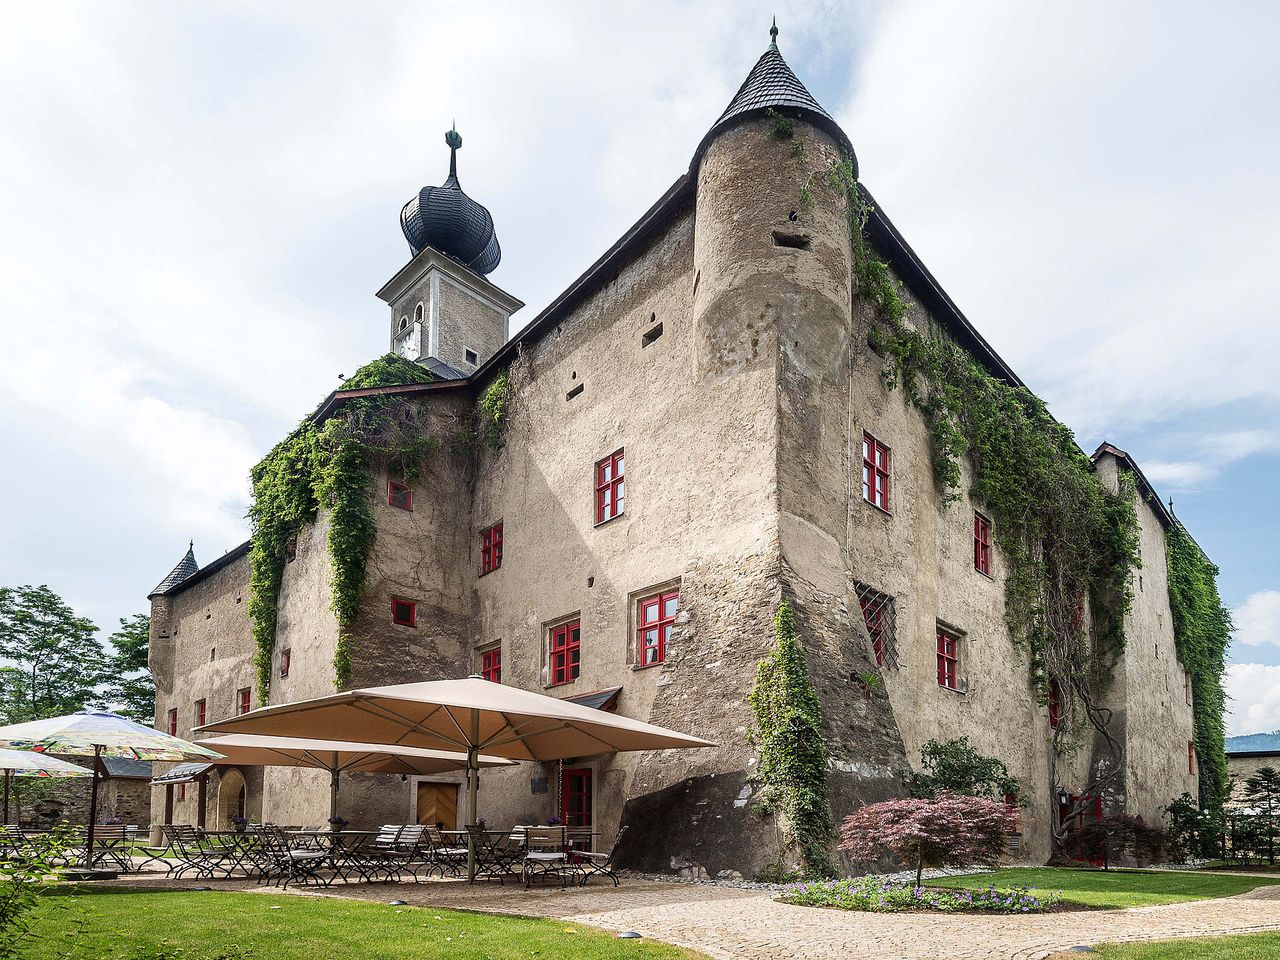 1 Woche Steiermark: Romantisches Schloss mit Therme